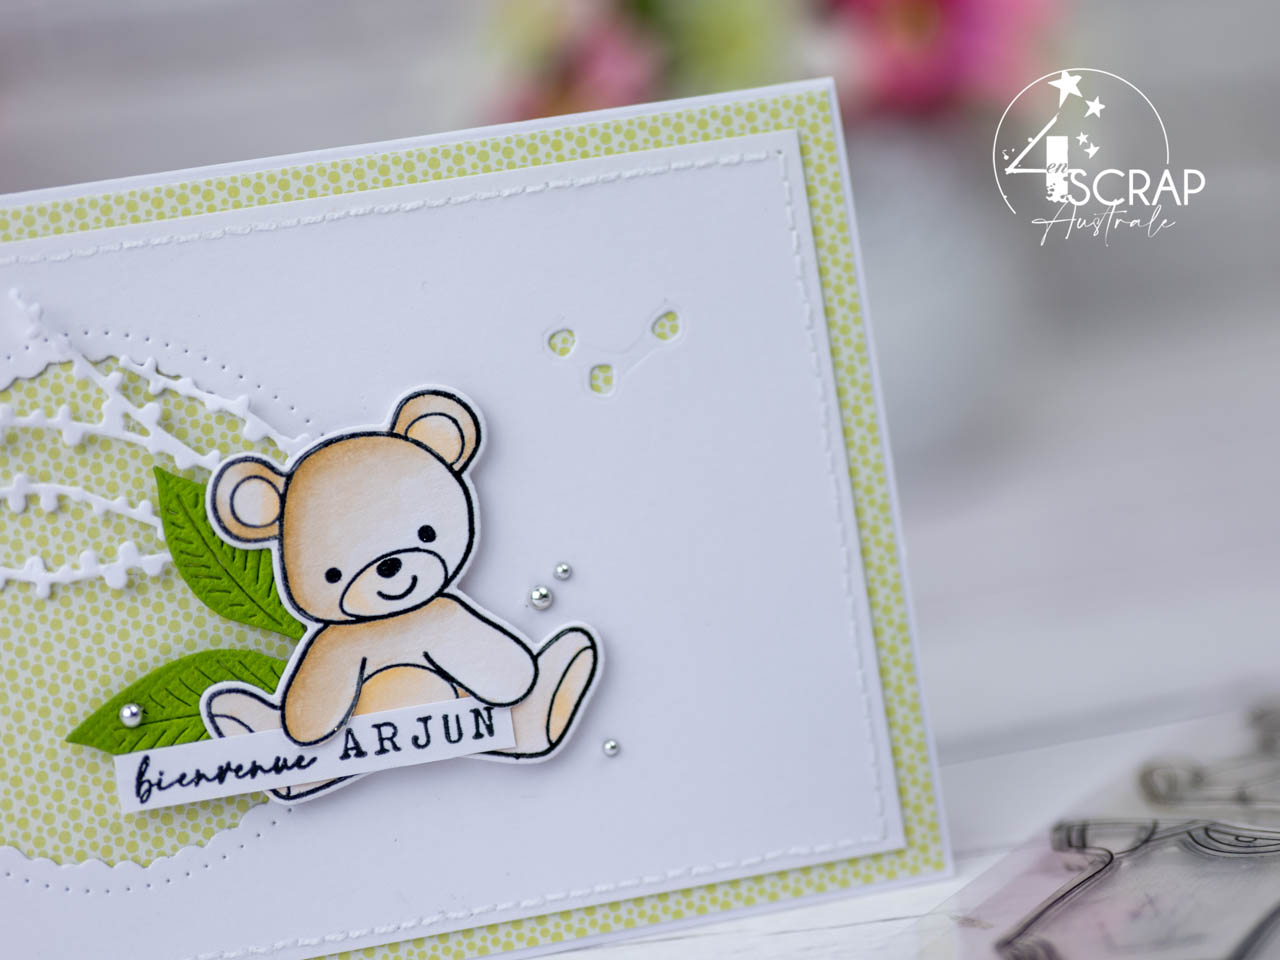 Création d'une carte de naissance avec un petit ourson à l'aquarelle, feuillage et fenêtre festonnées en 4enscrap.